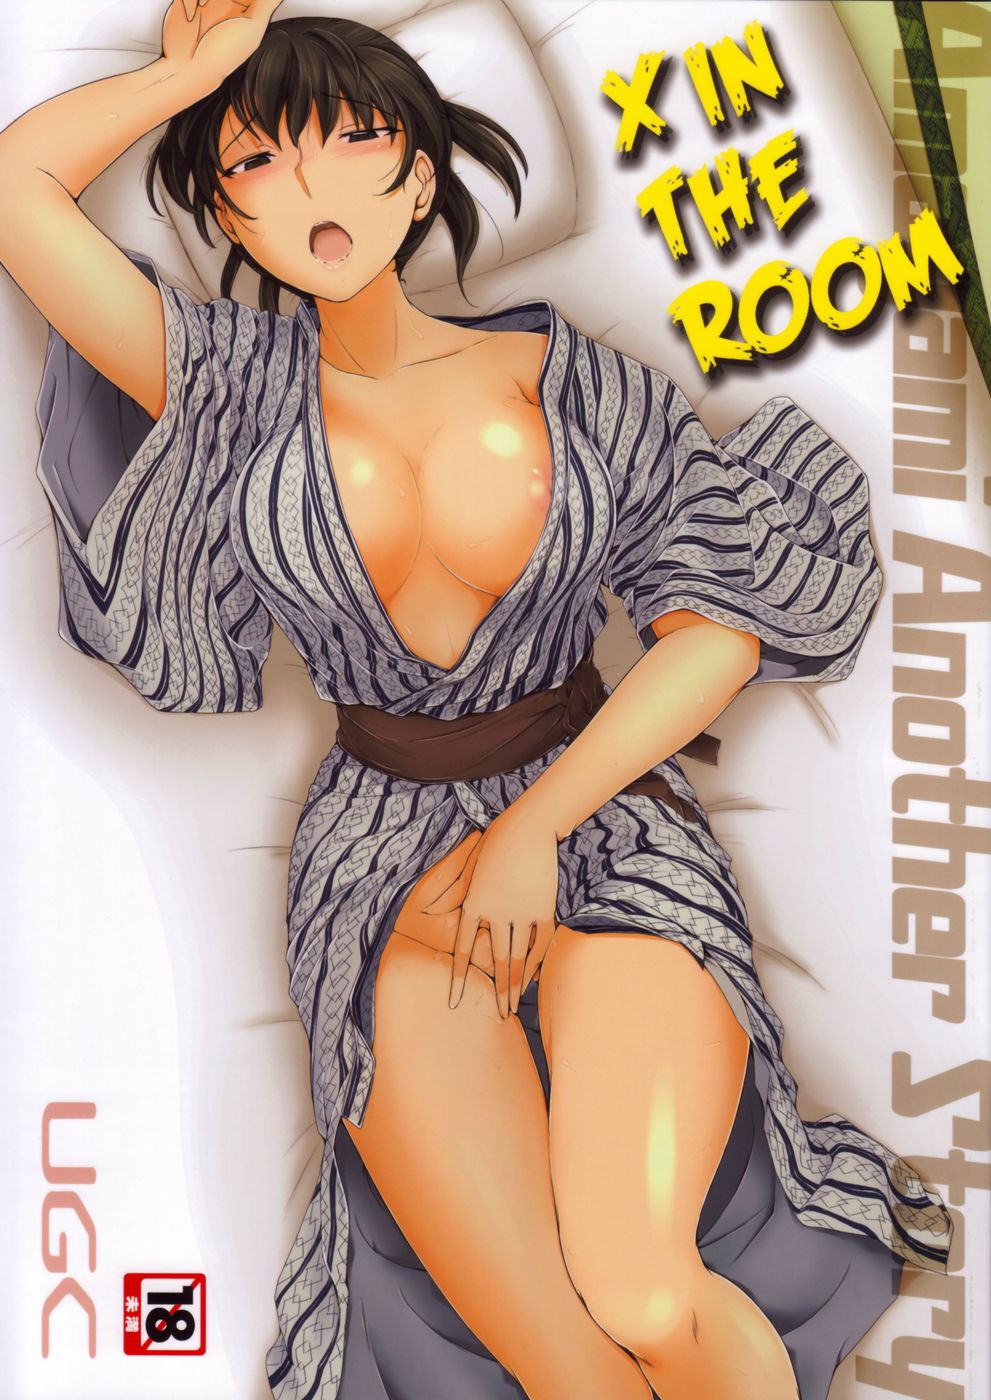 Hentai Manga Comic-X in the Room-Read-1